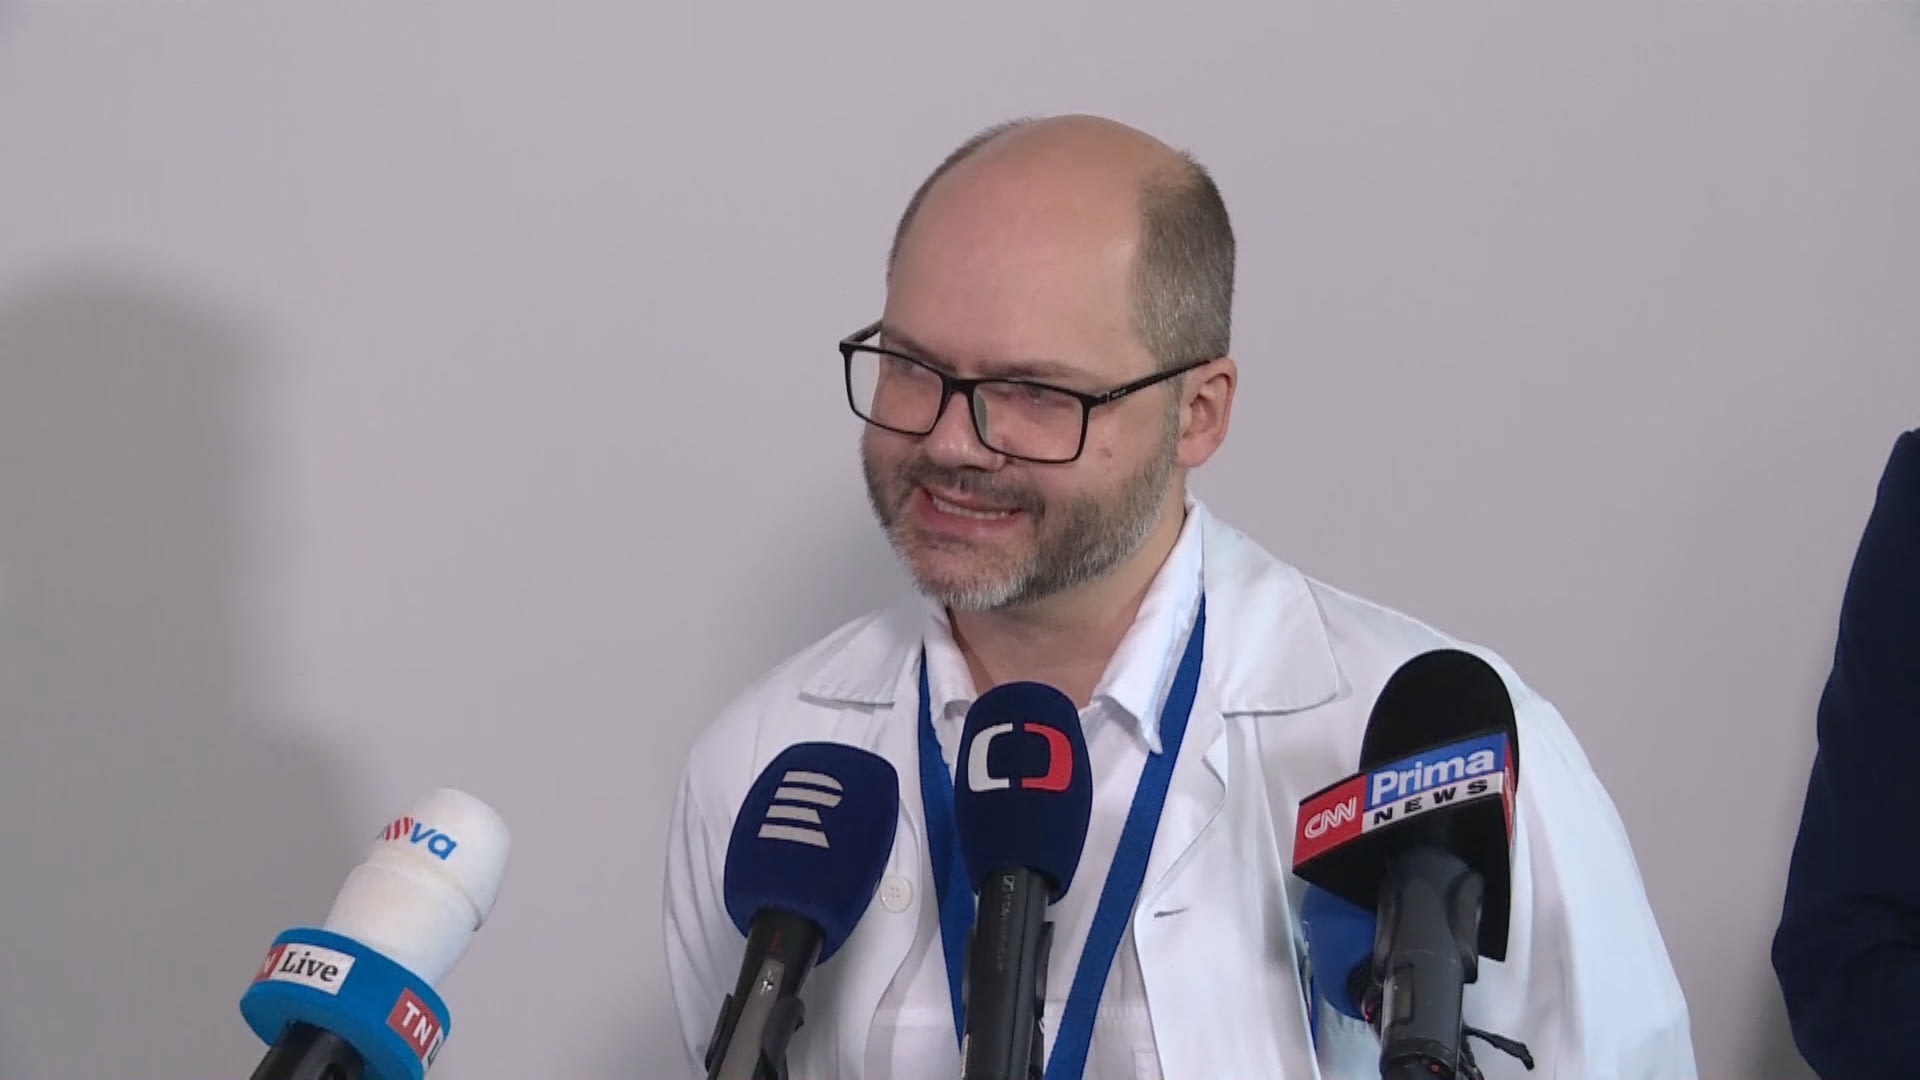 Michal Zikán, přednosta Gynekologicko-porodnické kliniky 1. lékařské fakulty UK a Fakultní nemocnice Bulovka